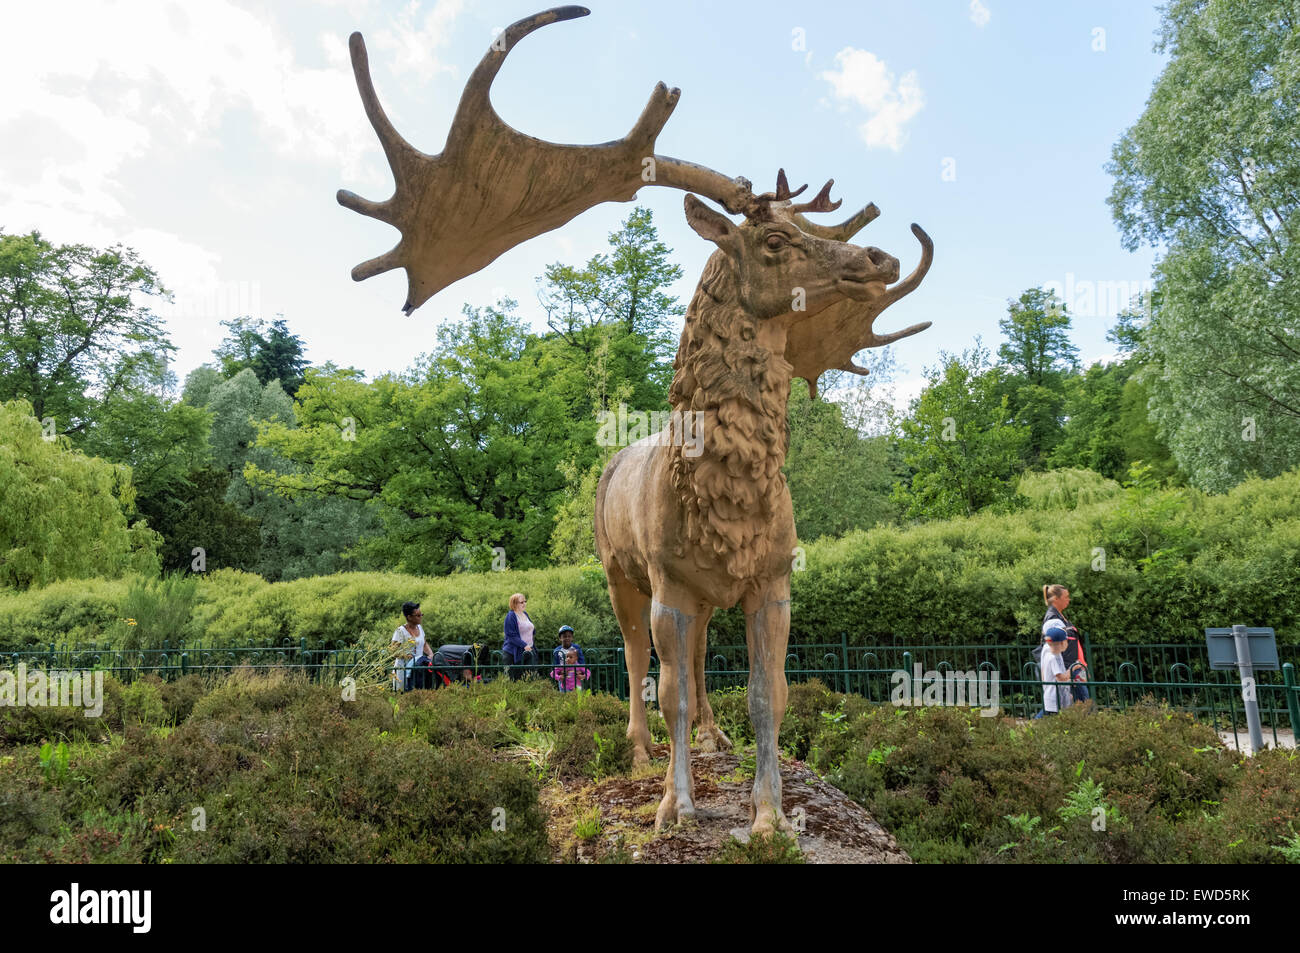 Crystal Palace Park, Megaloceros deer sculpture, London England United Kingdom UK Stock Photo